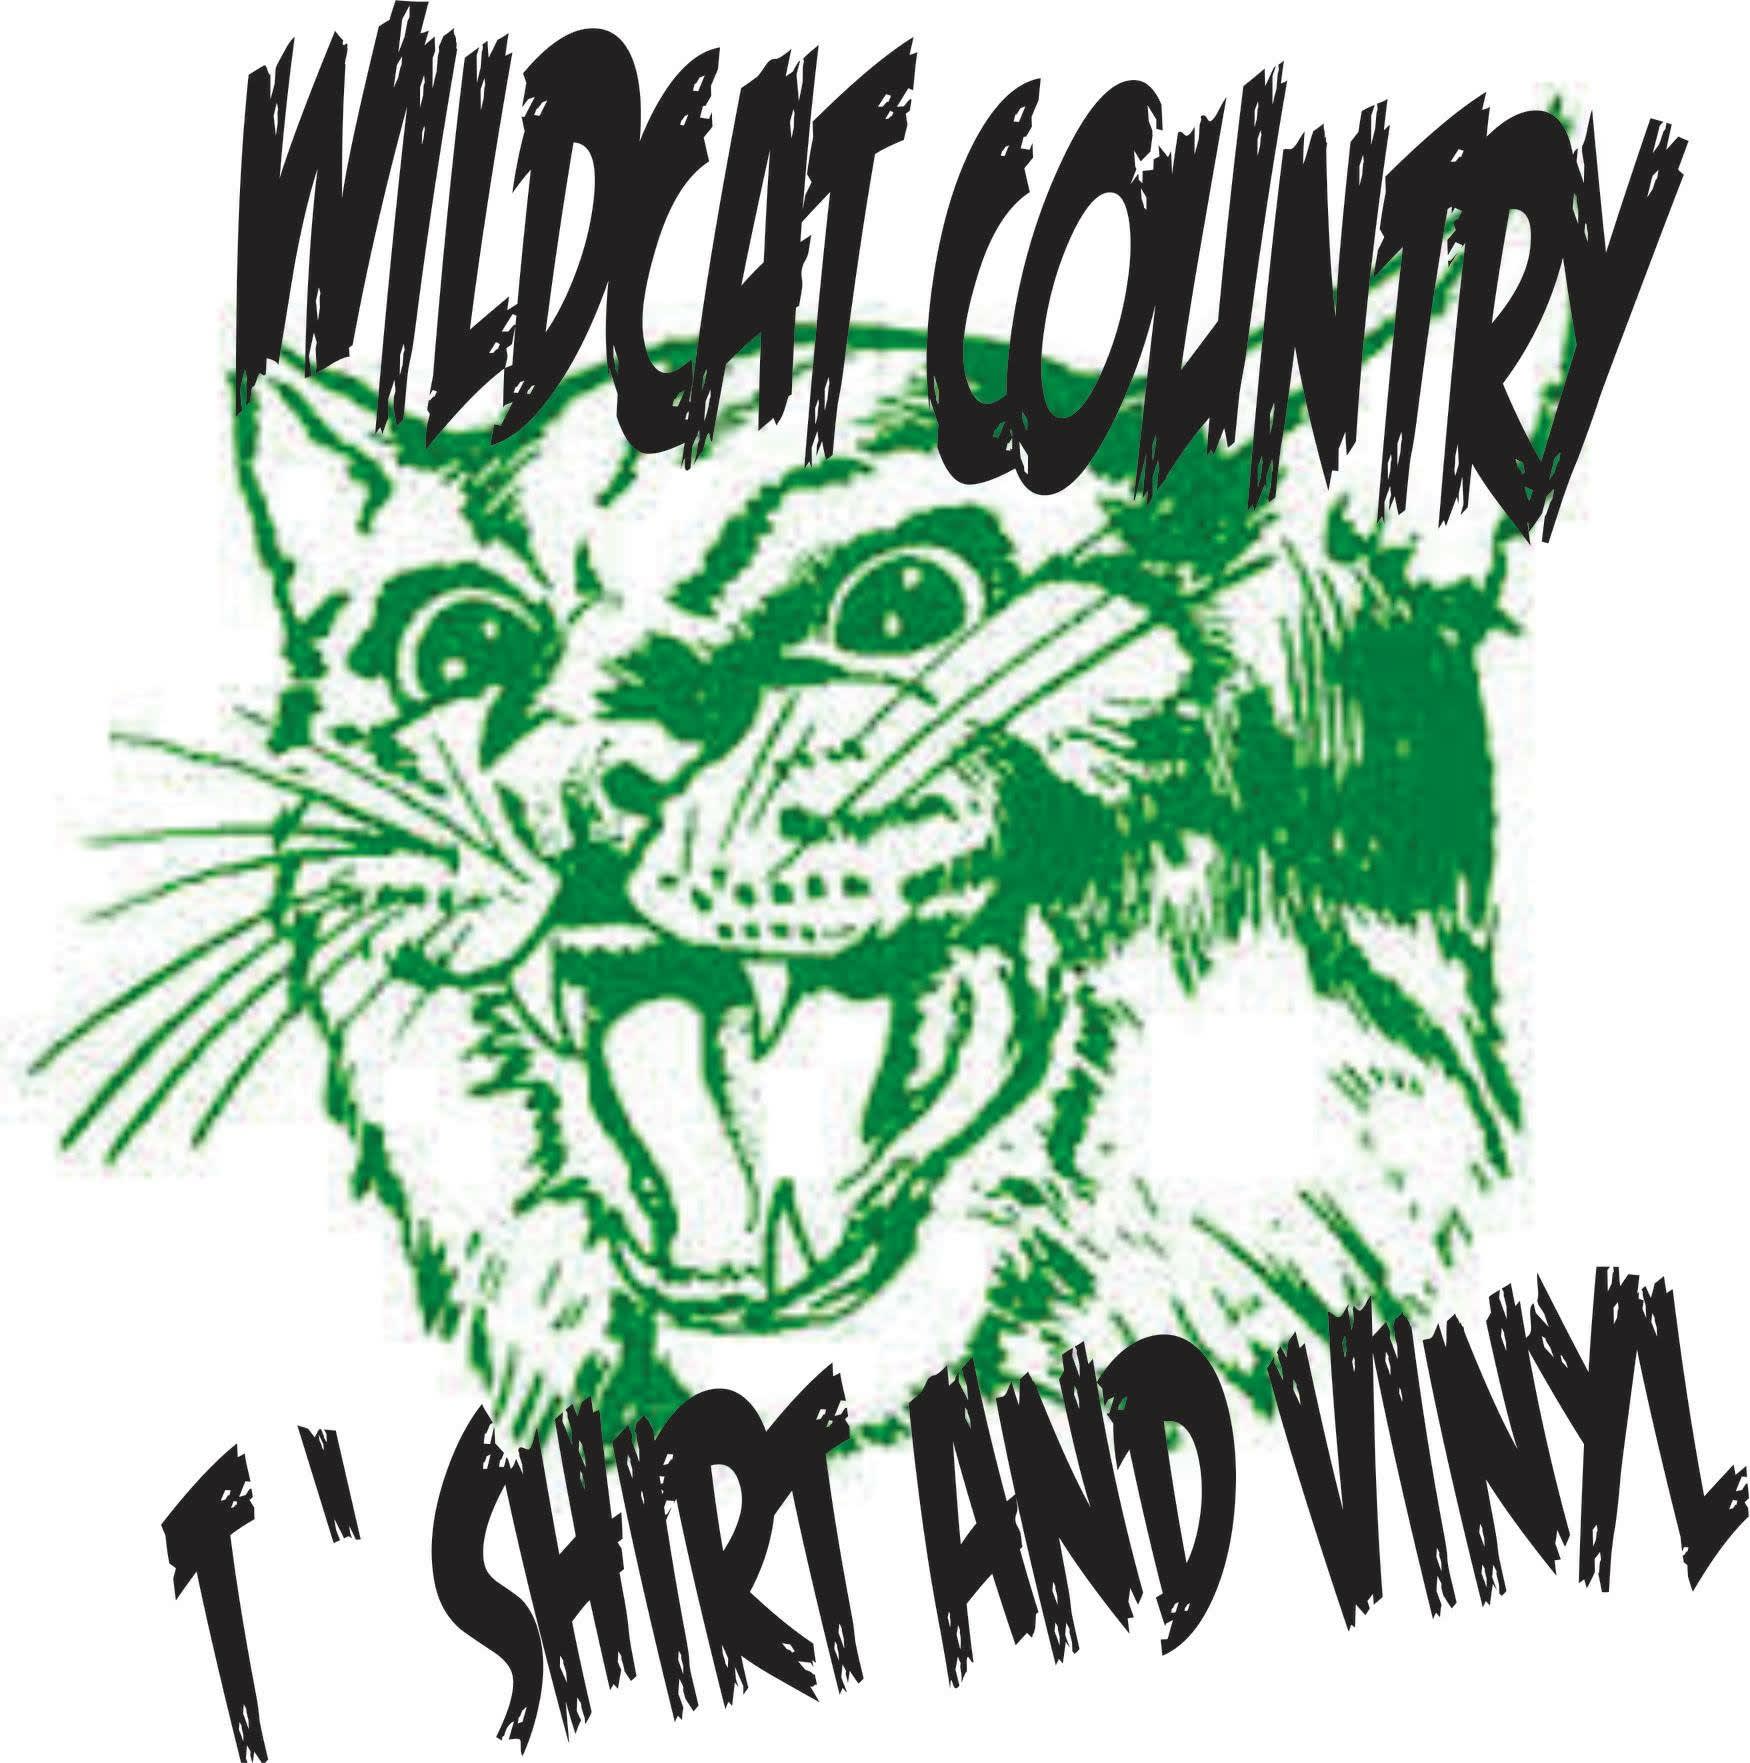 Wildcat Country Tshirt & Vinyl